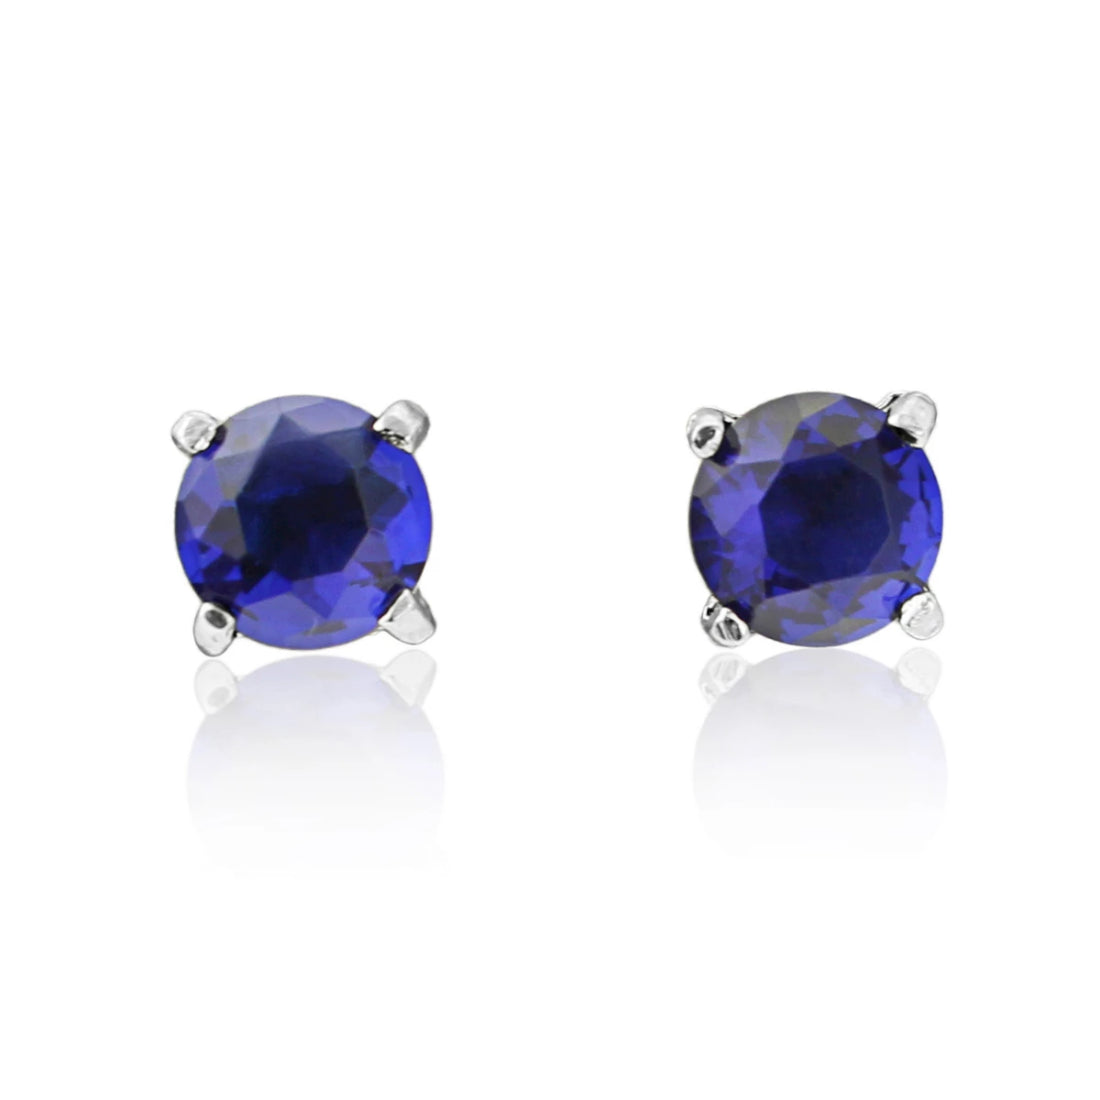 Striking Sapphire Blue Crystal Stud Earrings